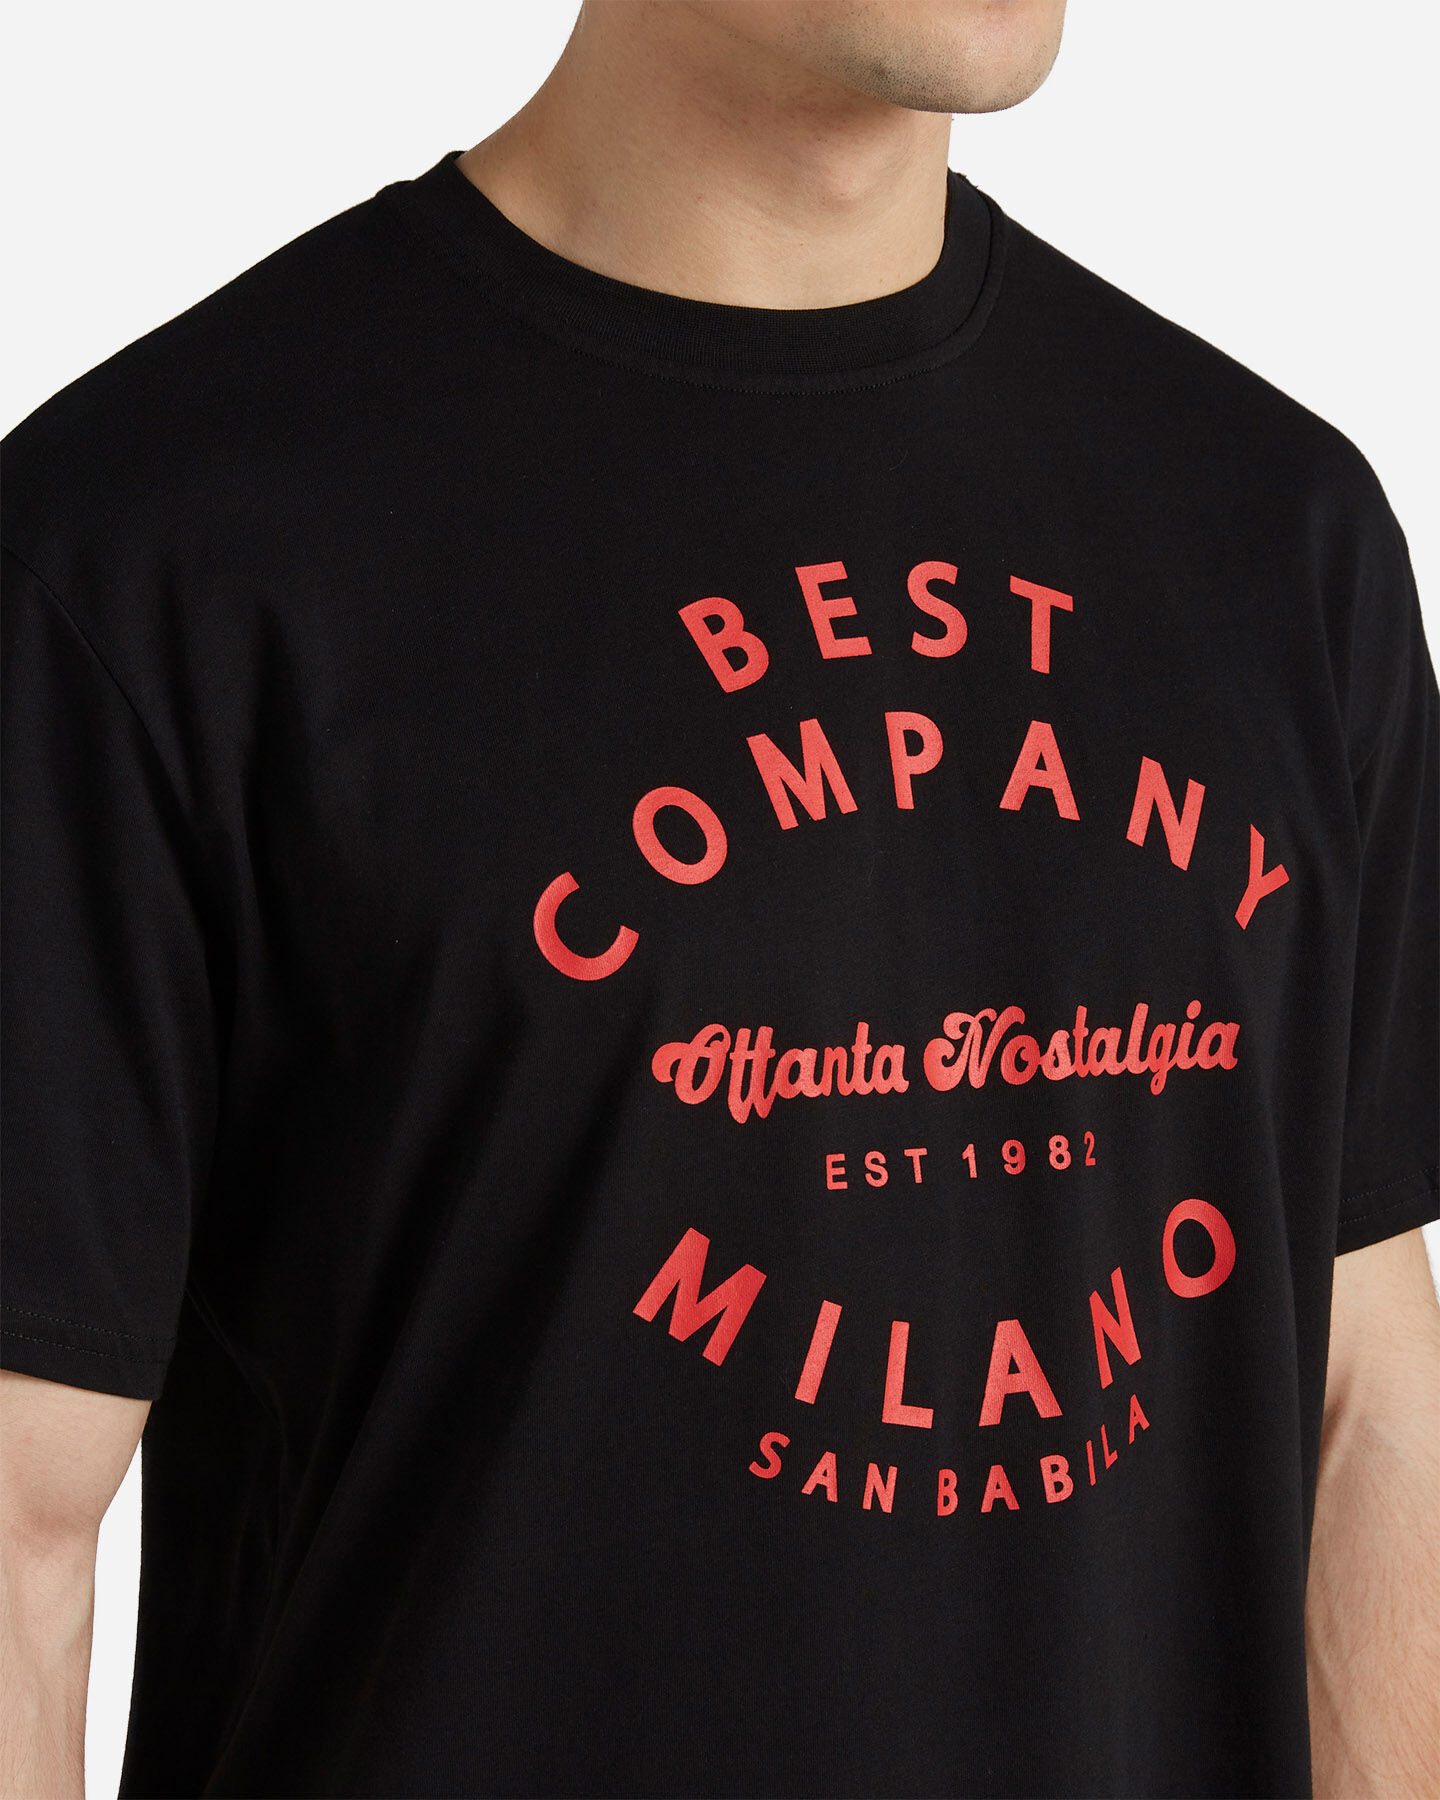  T-Shirt BEST COMPANY OTTANTA NOSTALGIA M S4103192|050|S scatto 4